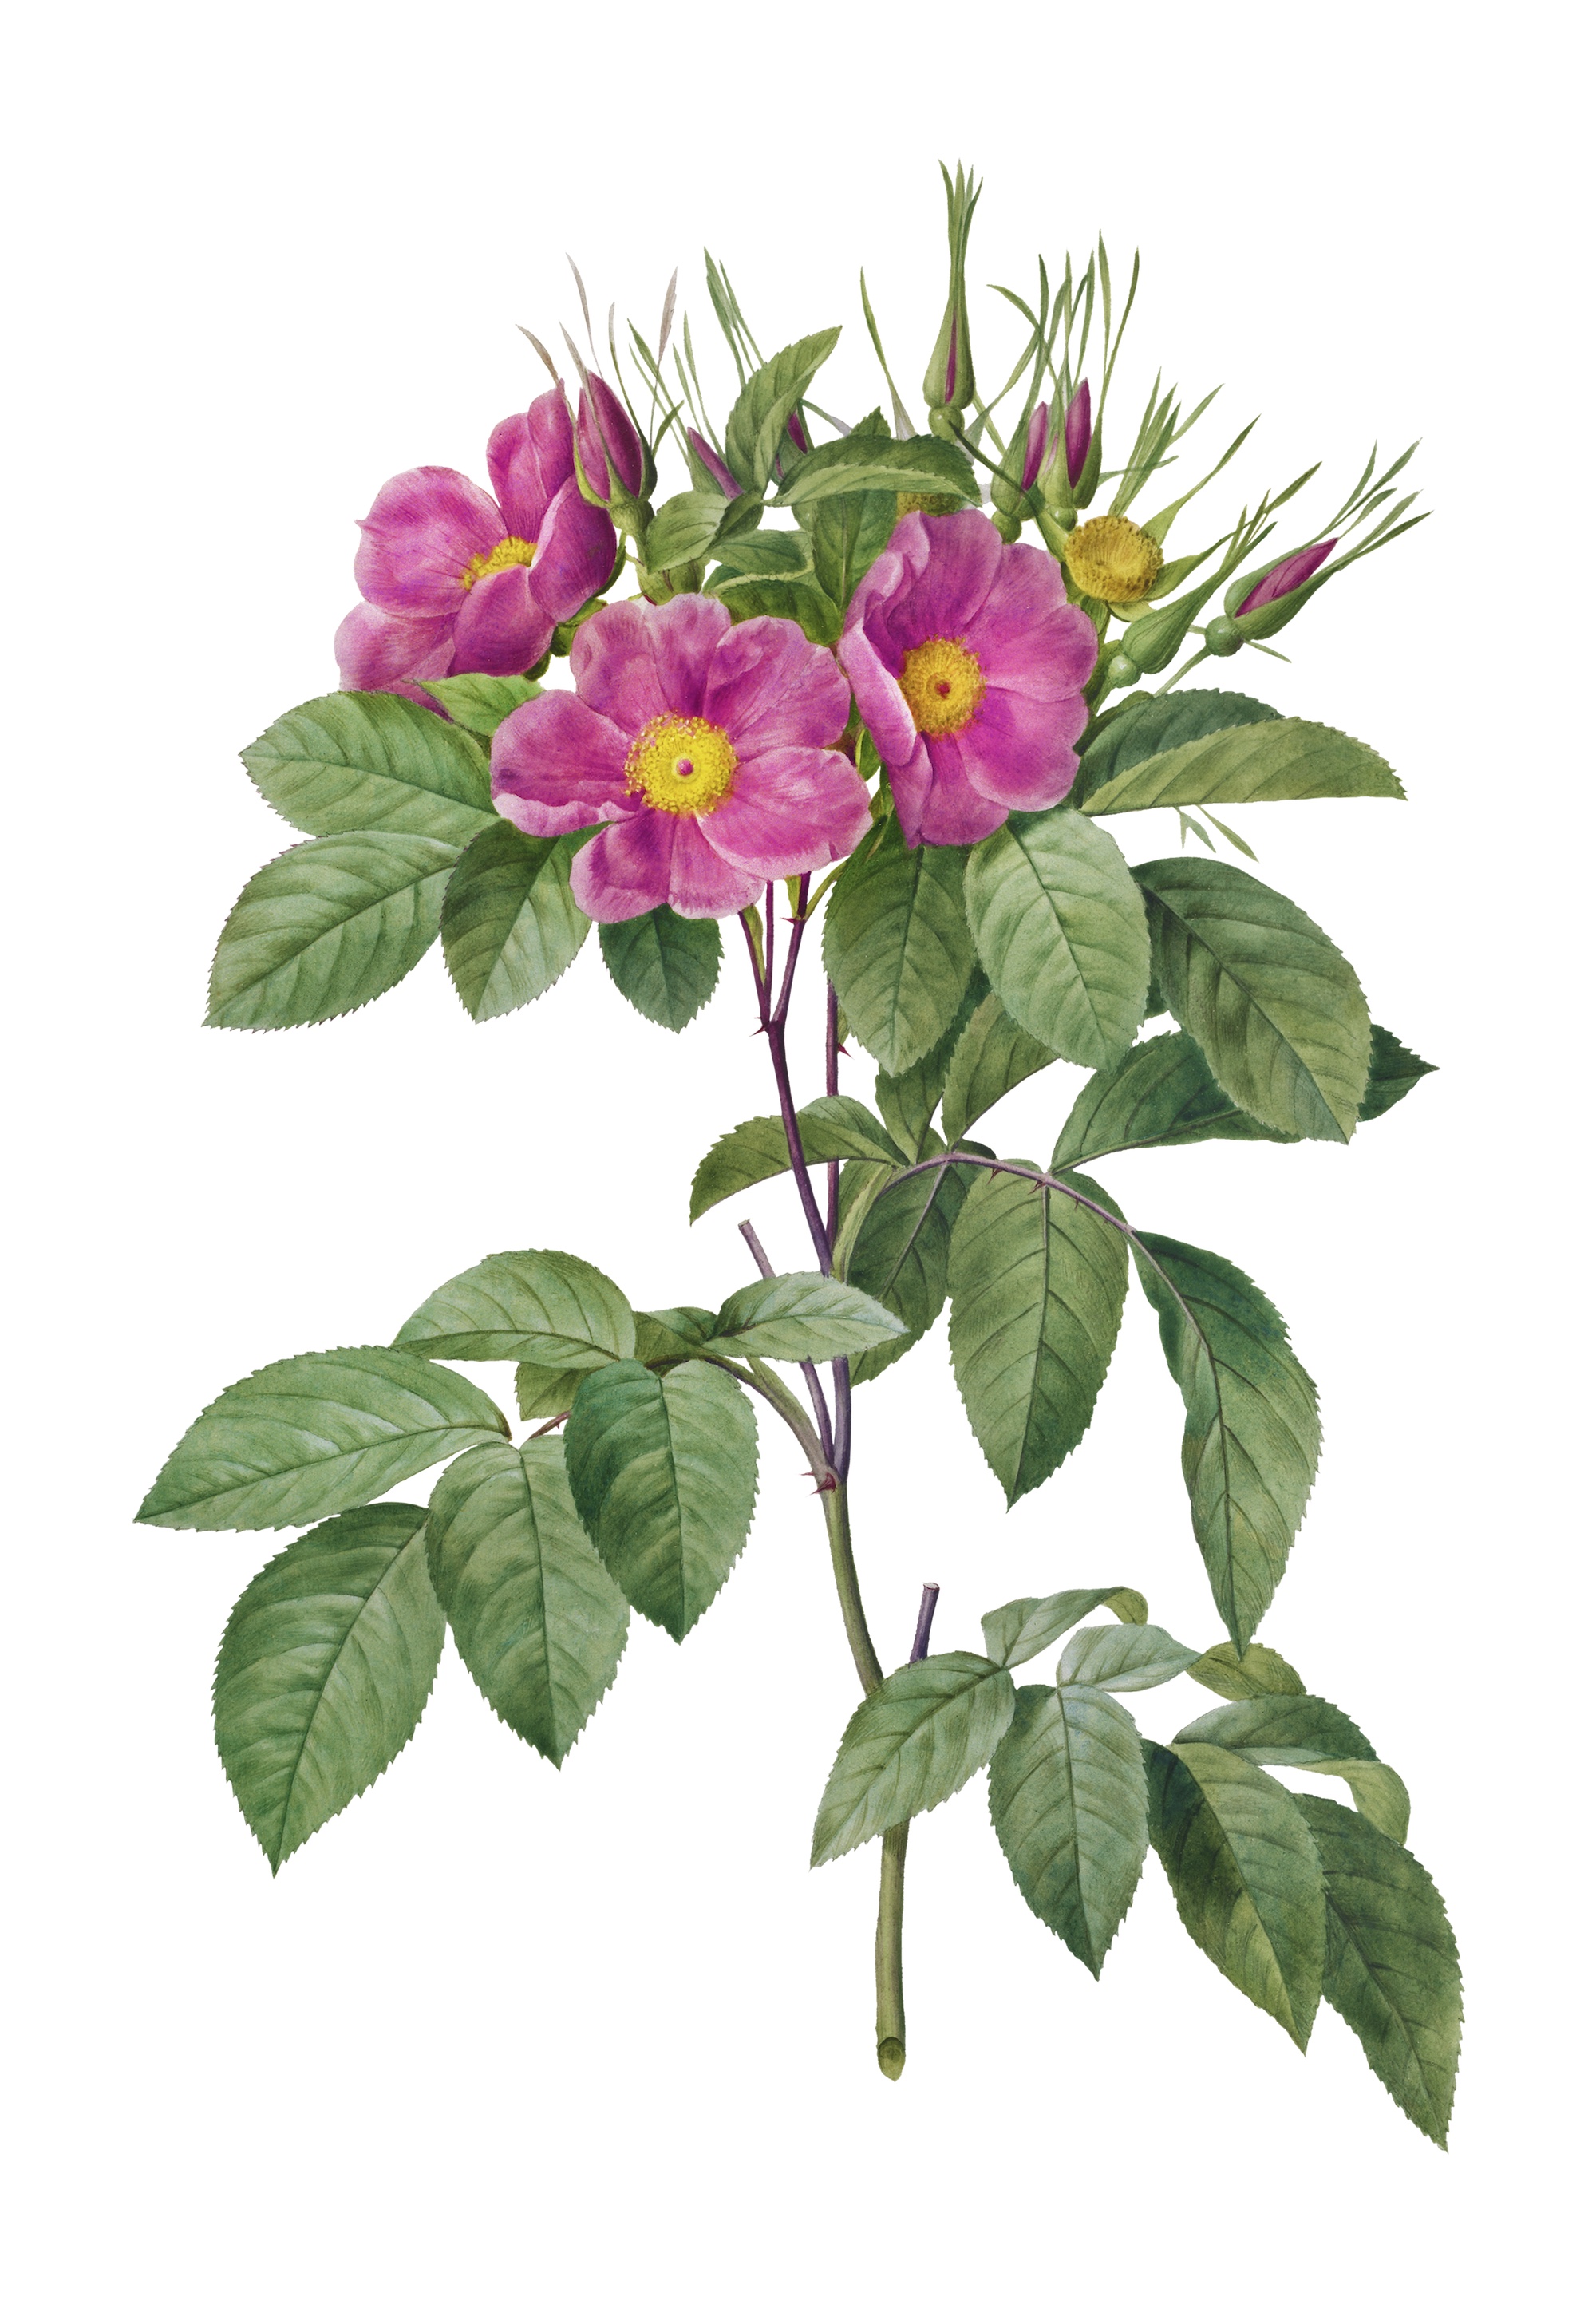 Wild Rose (Rosa carolina) botonical illustration.